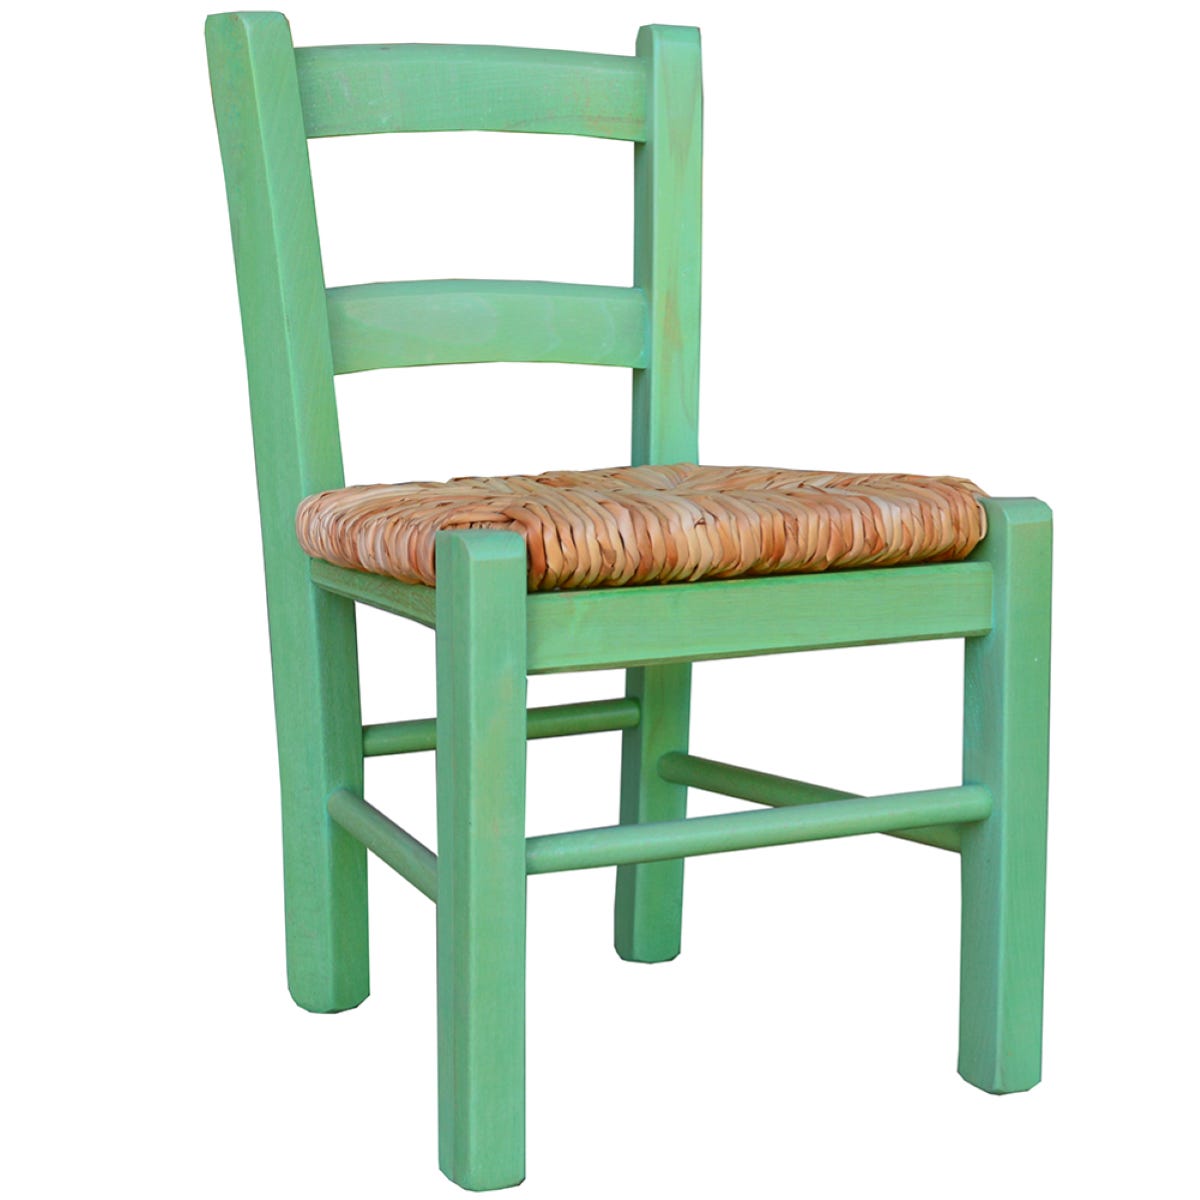 Ma première chaise bois naturel, chaise enfant bois massif Montessori